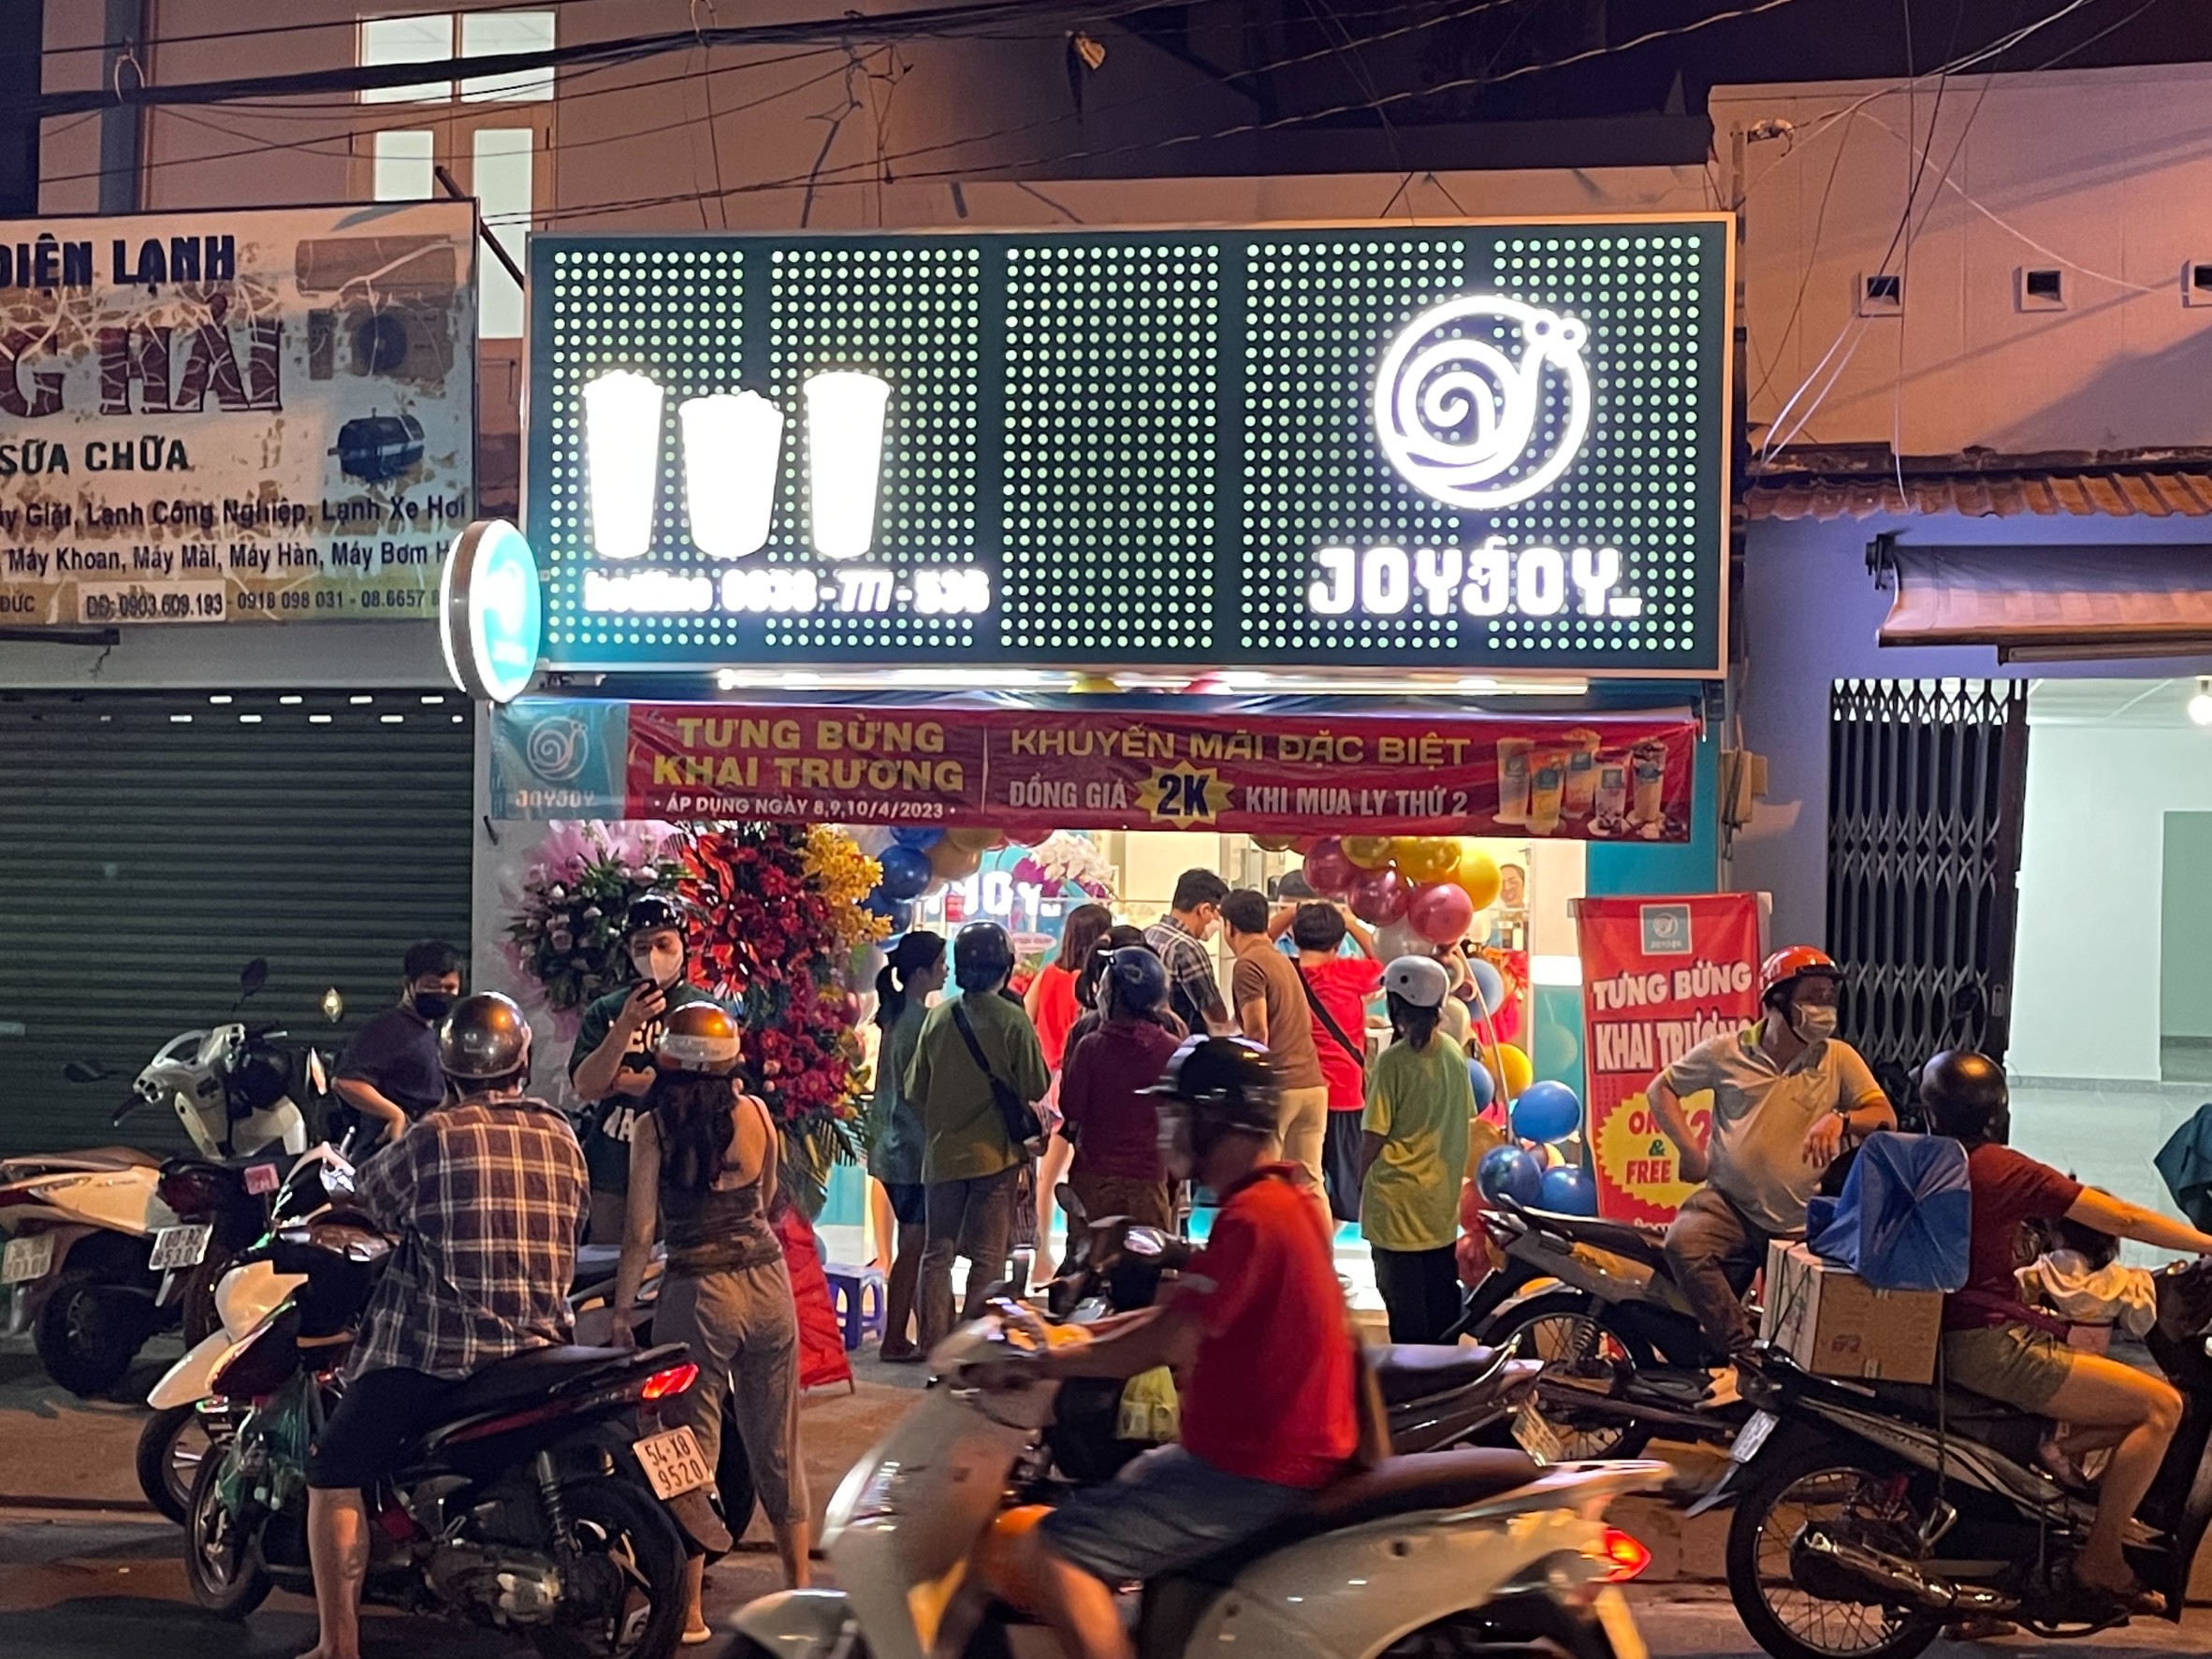 Trà sữa trân châu Đài Loan︱Chào mừng đến với cửa hàng Joy Joy Dessert Milk Tea︱JOYJOYTEA